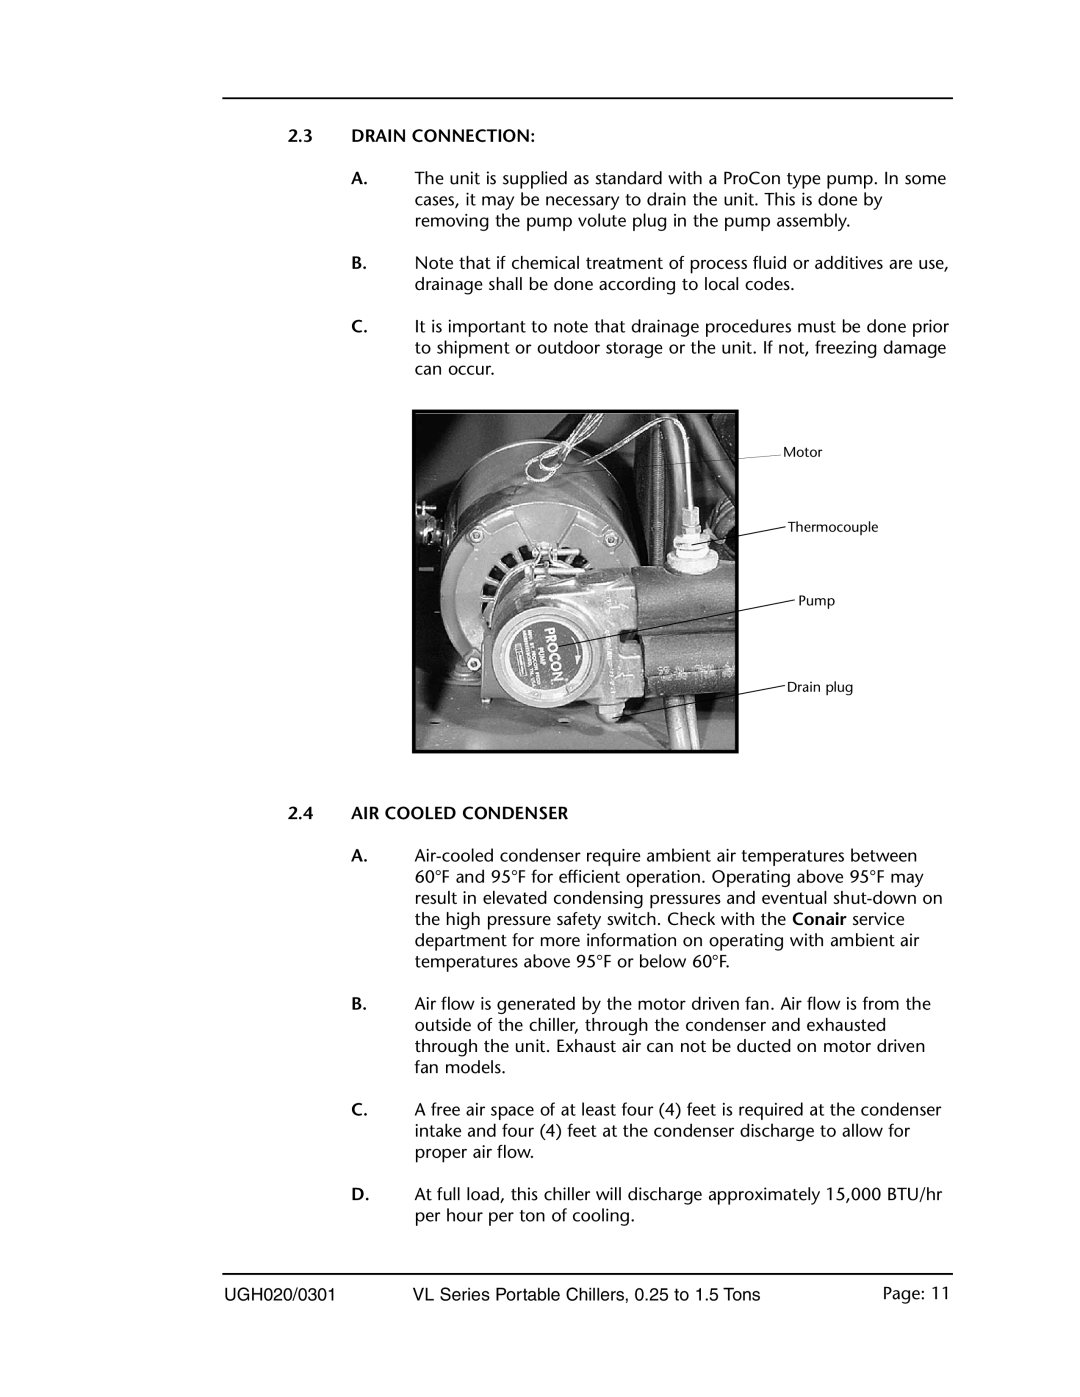 Conair VL Series manual 2.3DRAIN CONNECTION, 2.4AIR COOLED CONDENSER 